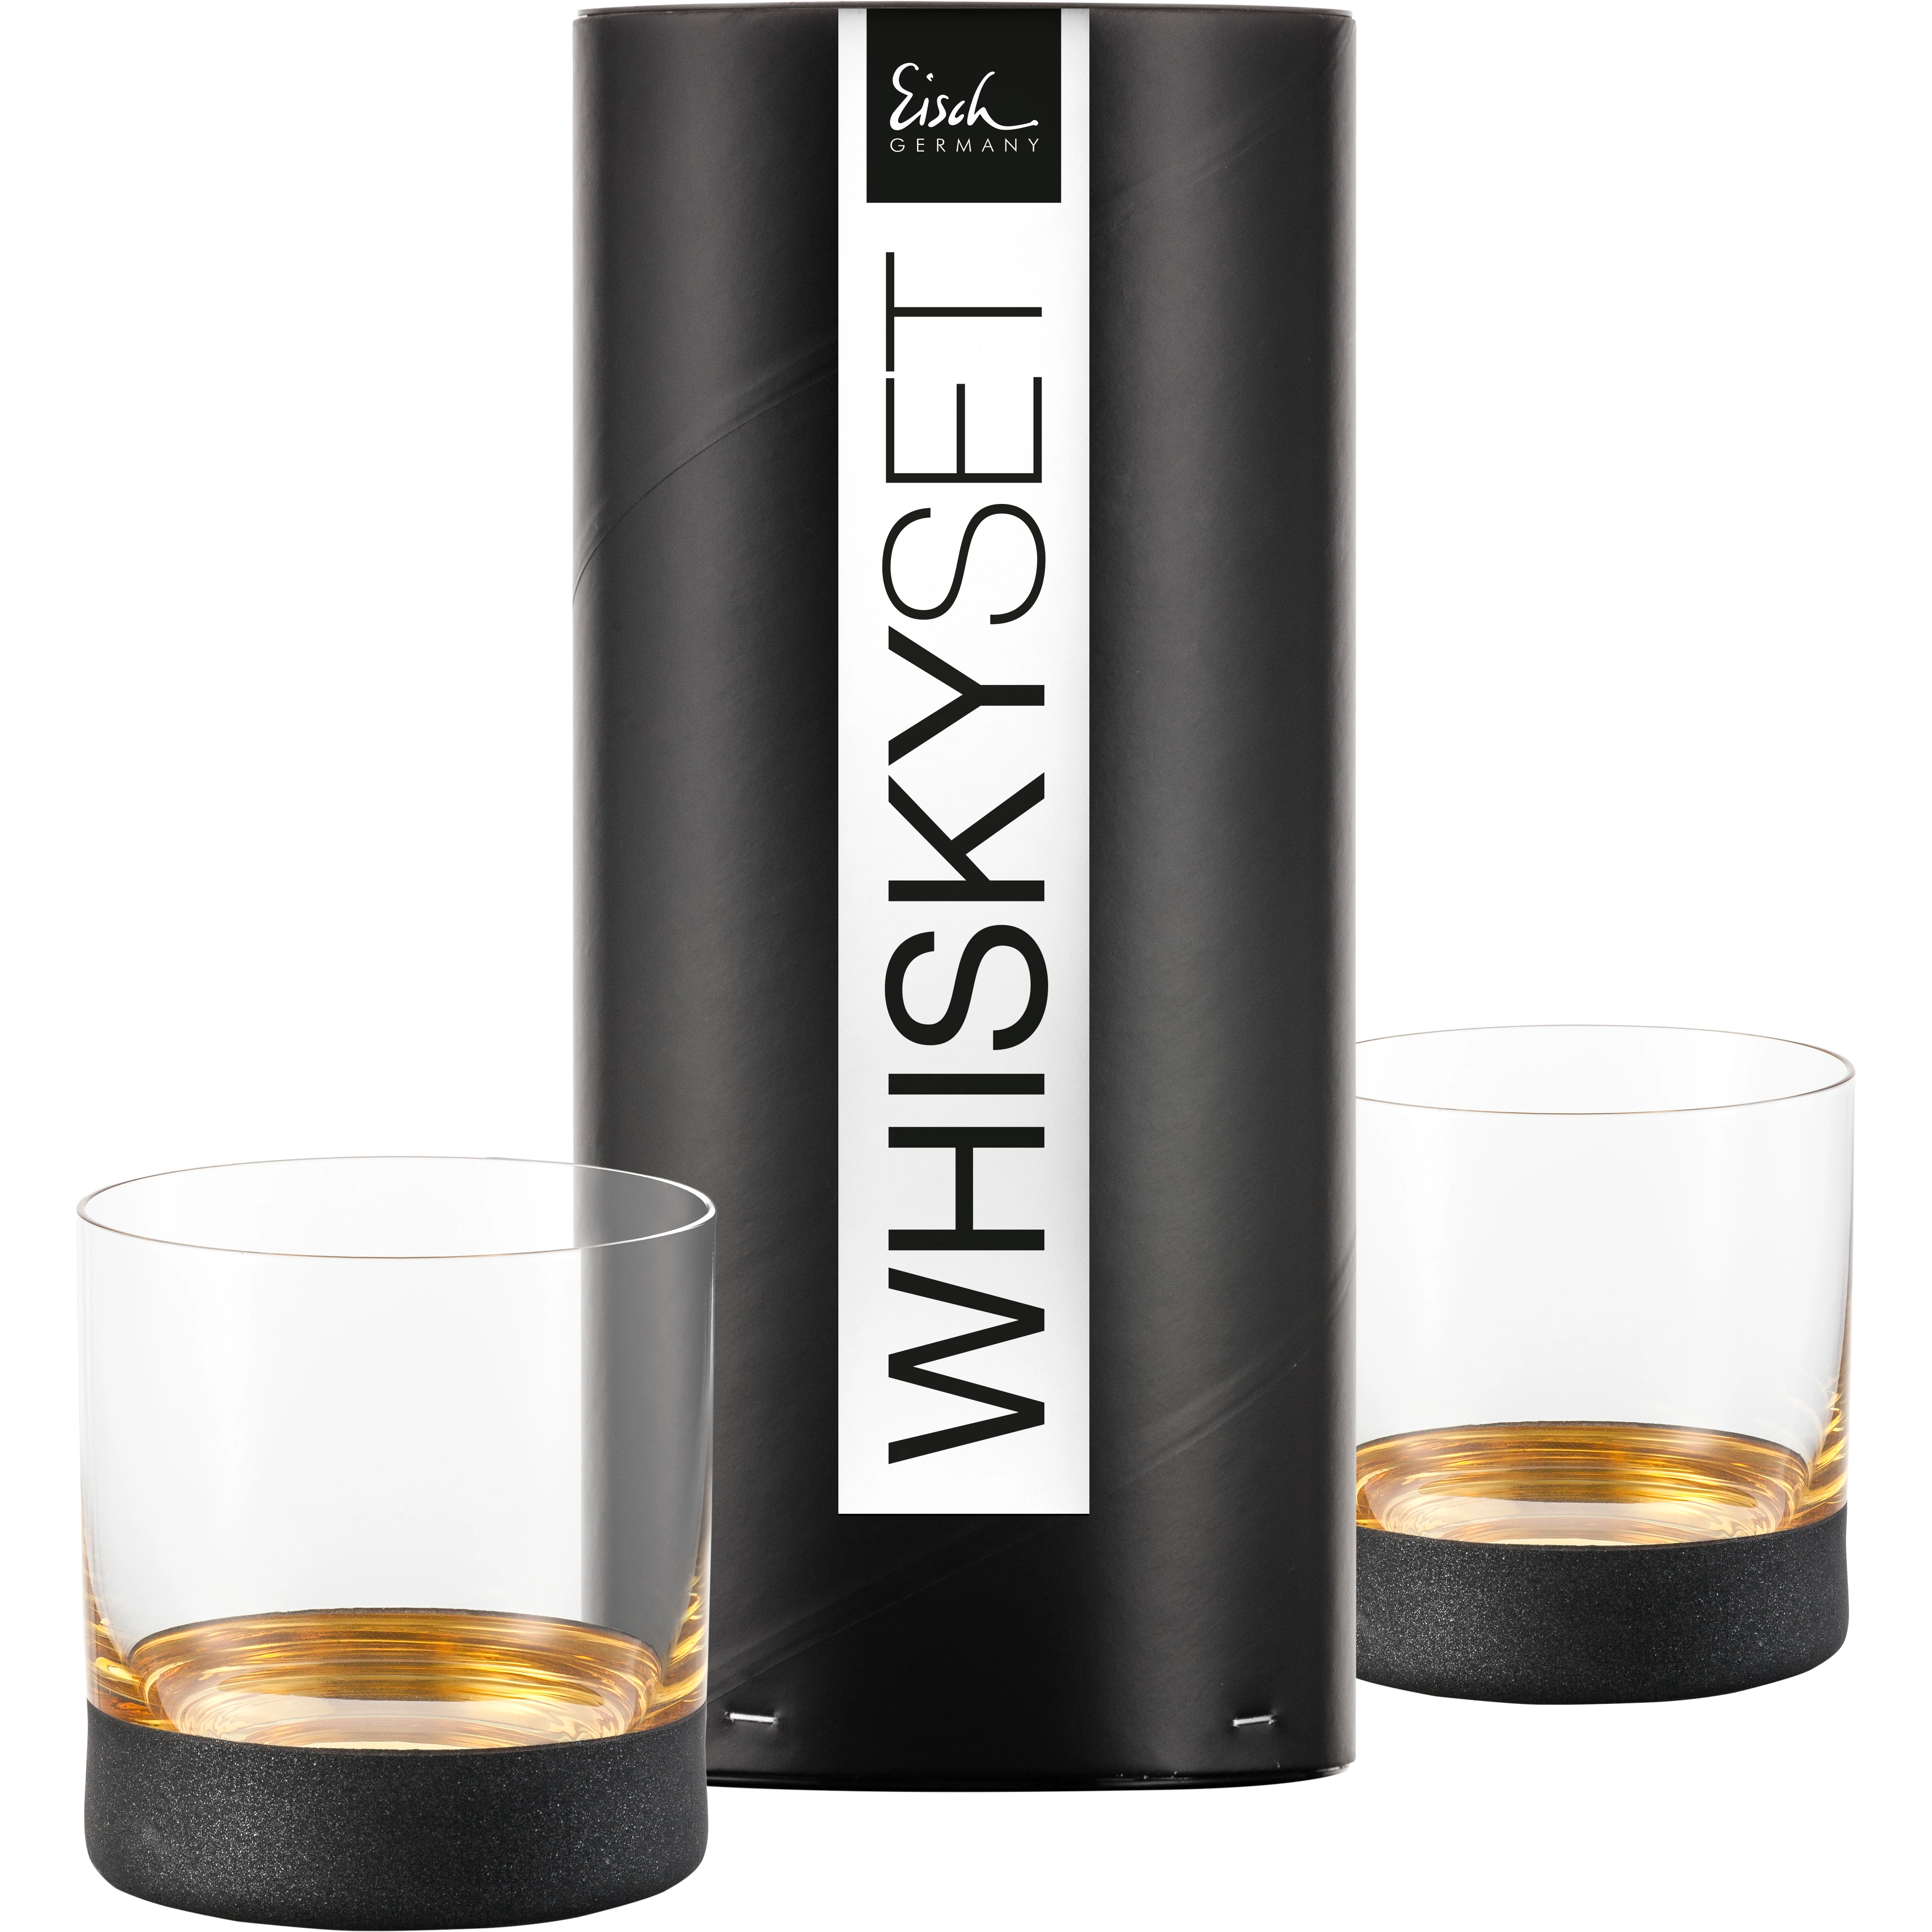 Eisch Whiskyglas Cosmo gold - 2 Stück in Geschenkröhre 500/14 transparent